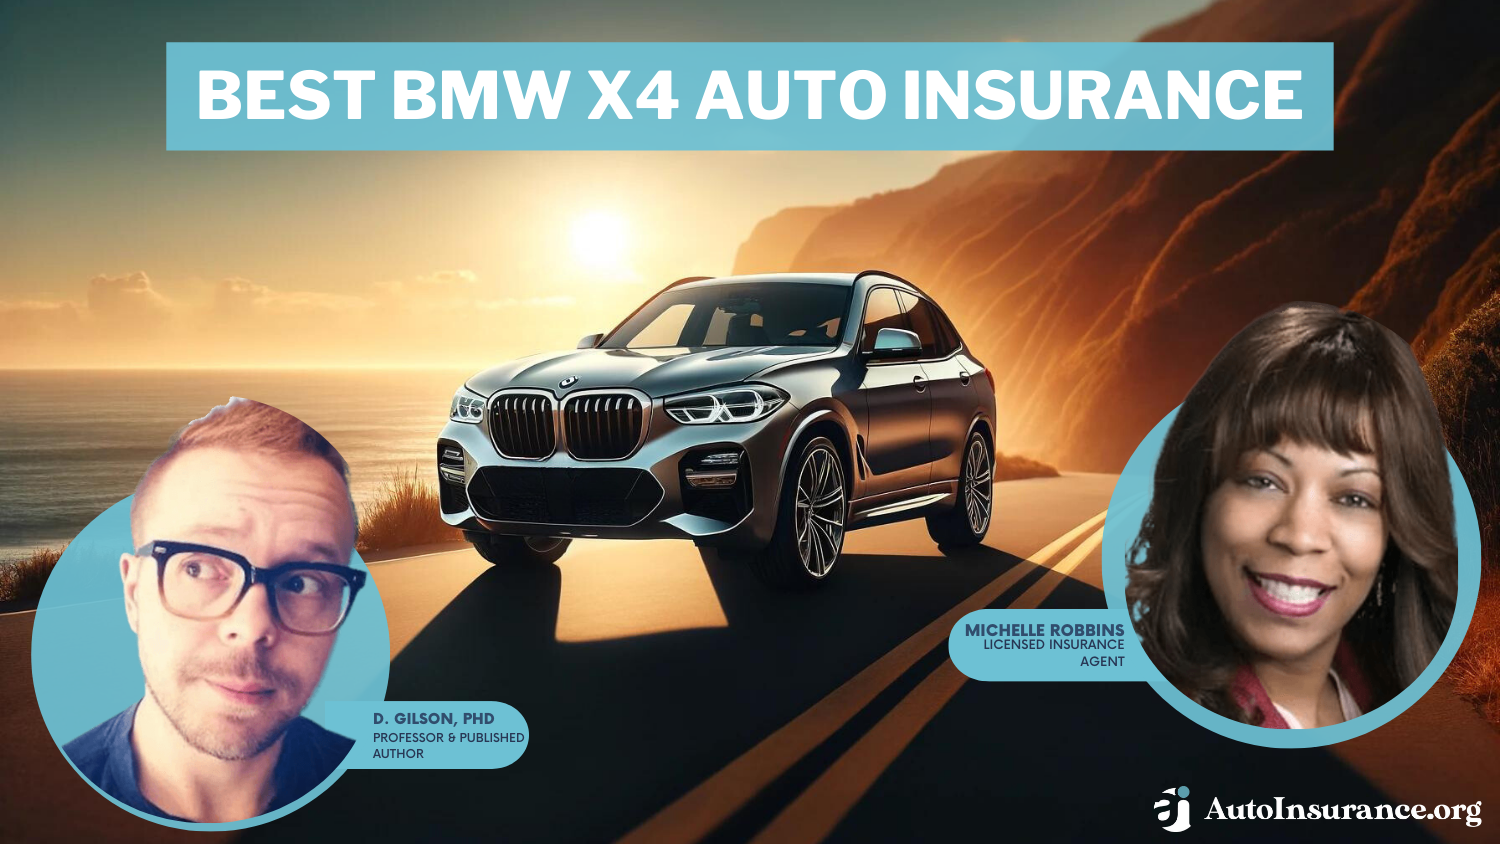 Best BMW X4 Auto Insurance: State Farm, Geico, and Progressive.